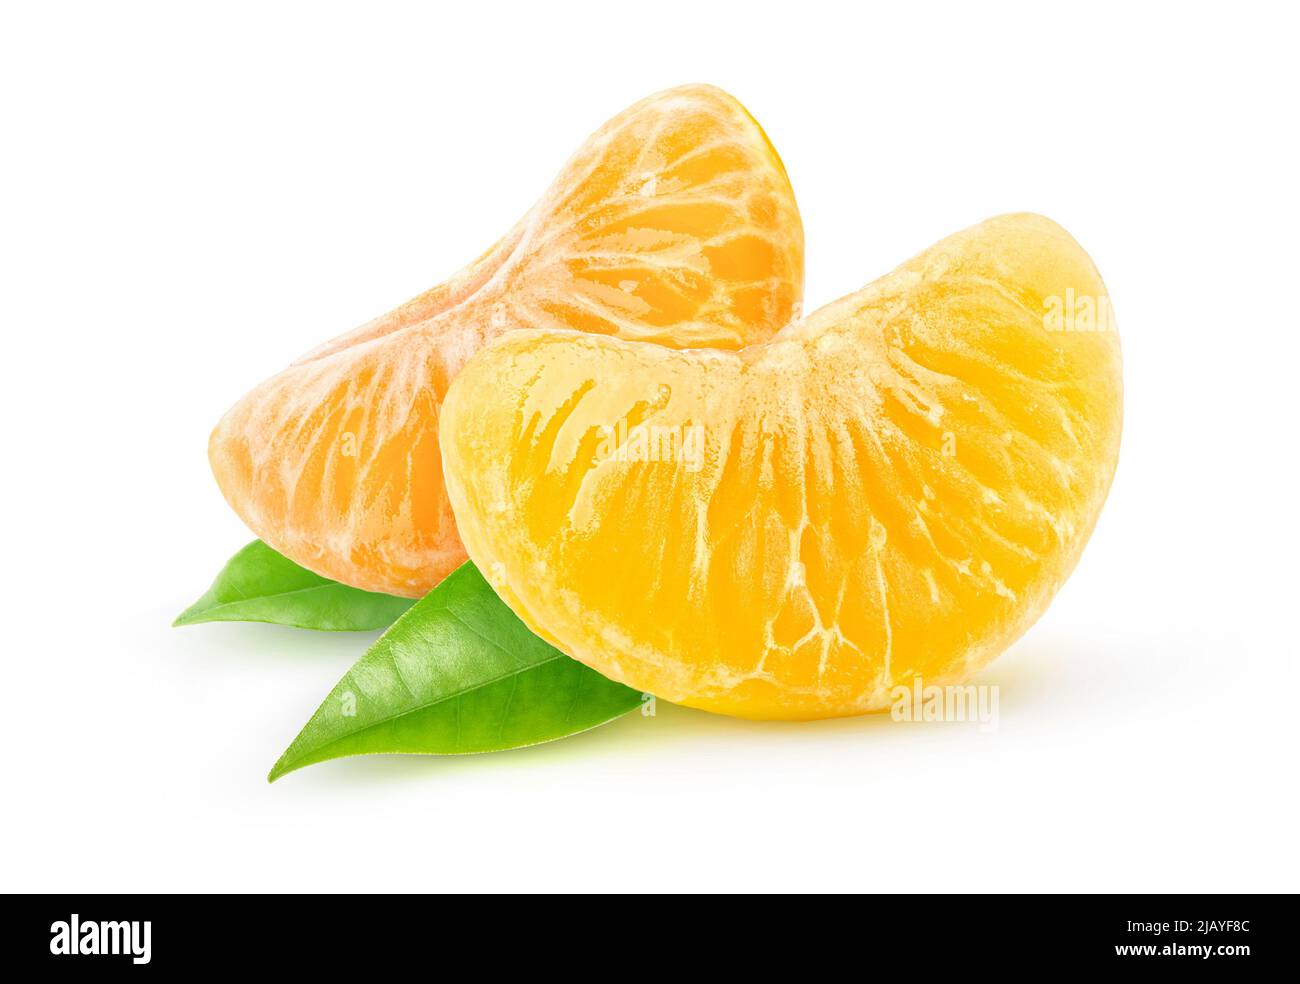 Two peeled citrus fruits segments isolated on white background Stock Photo